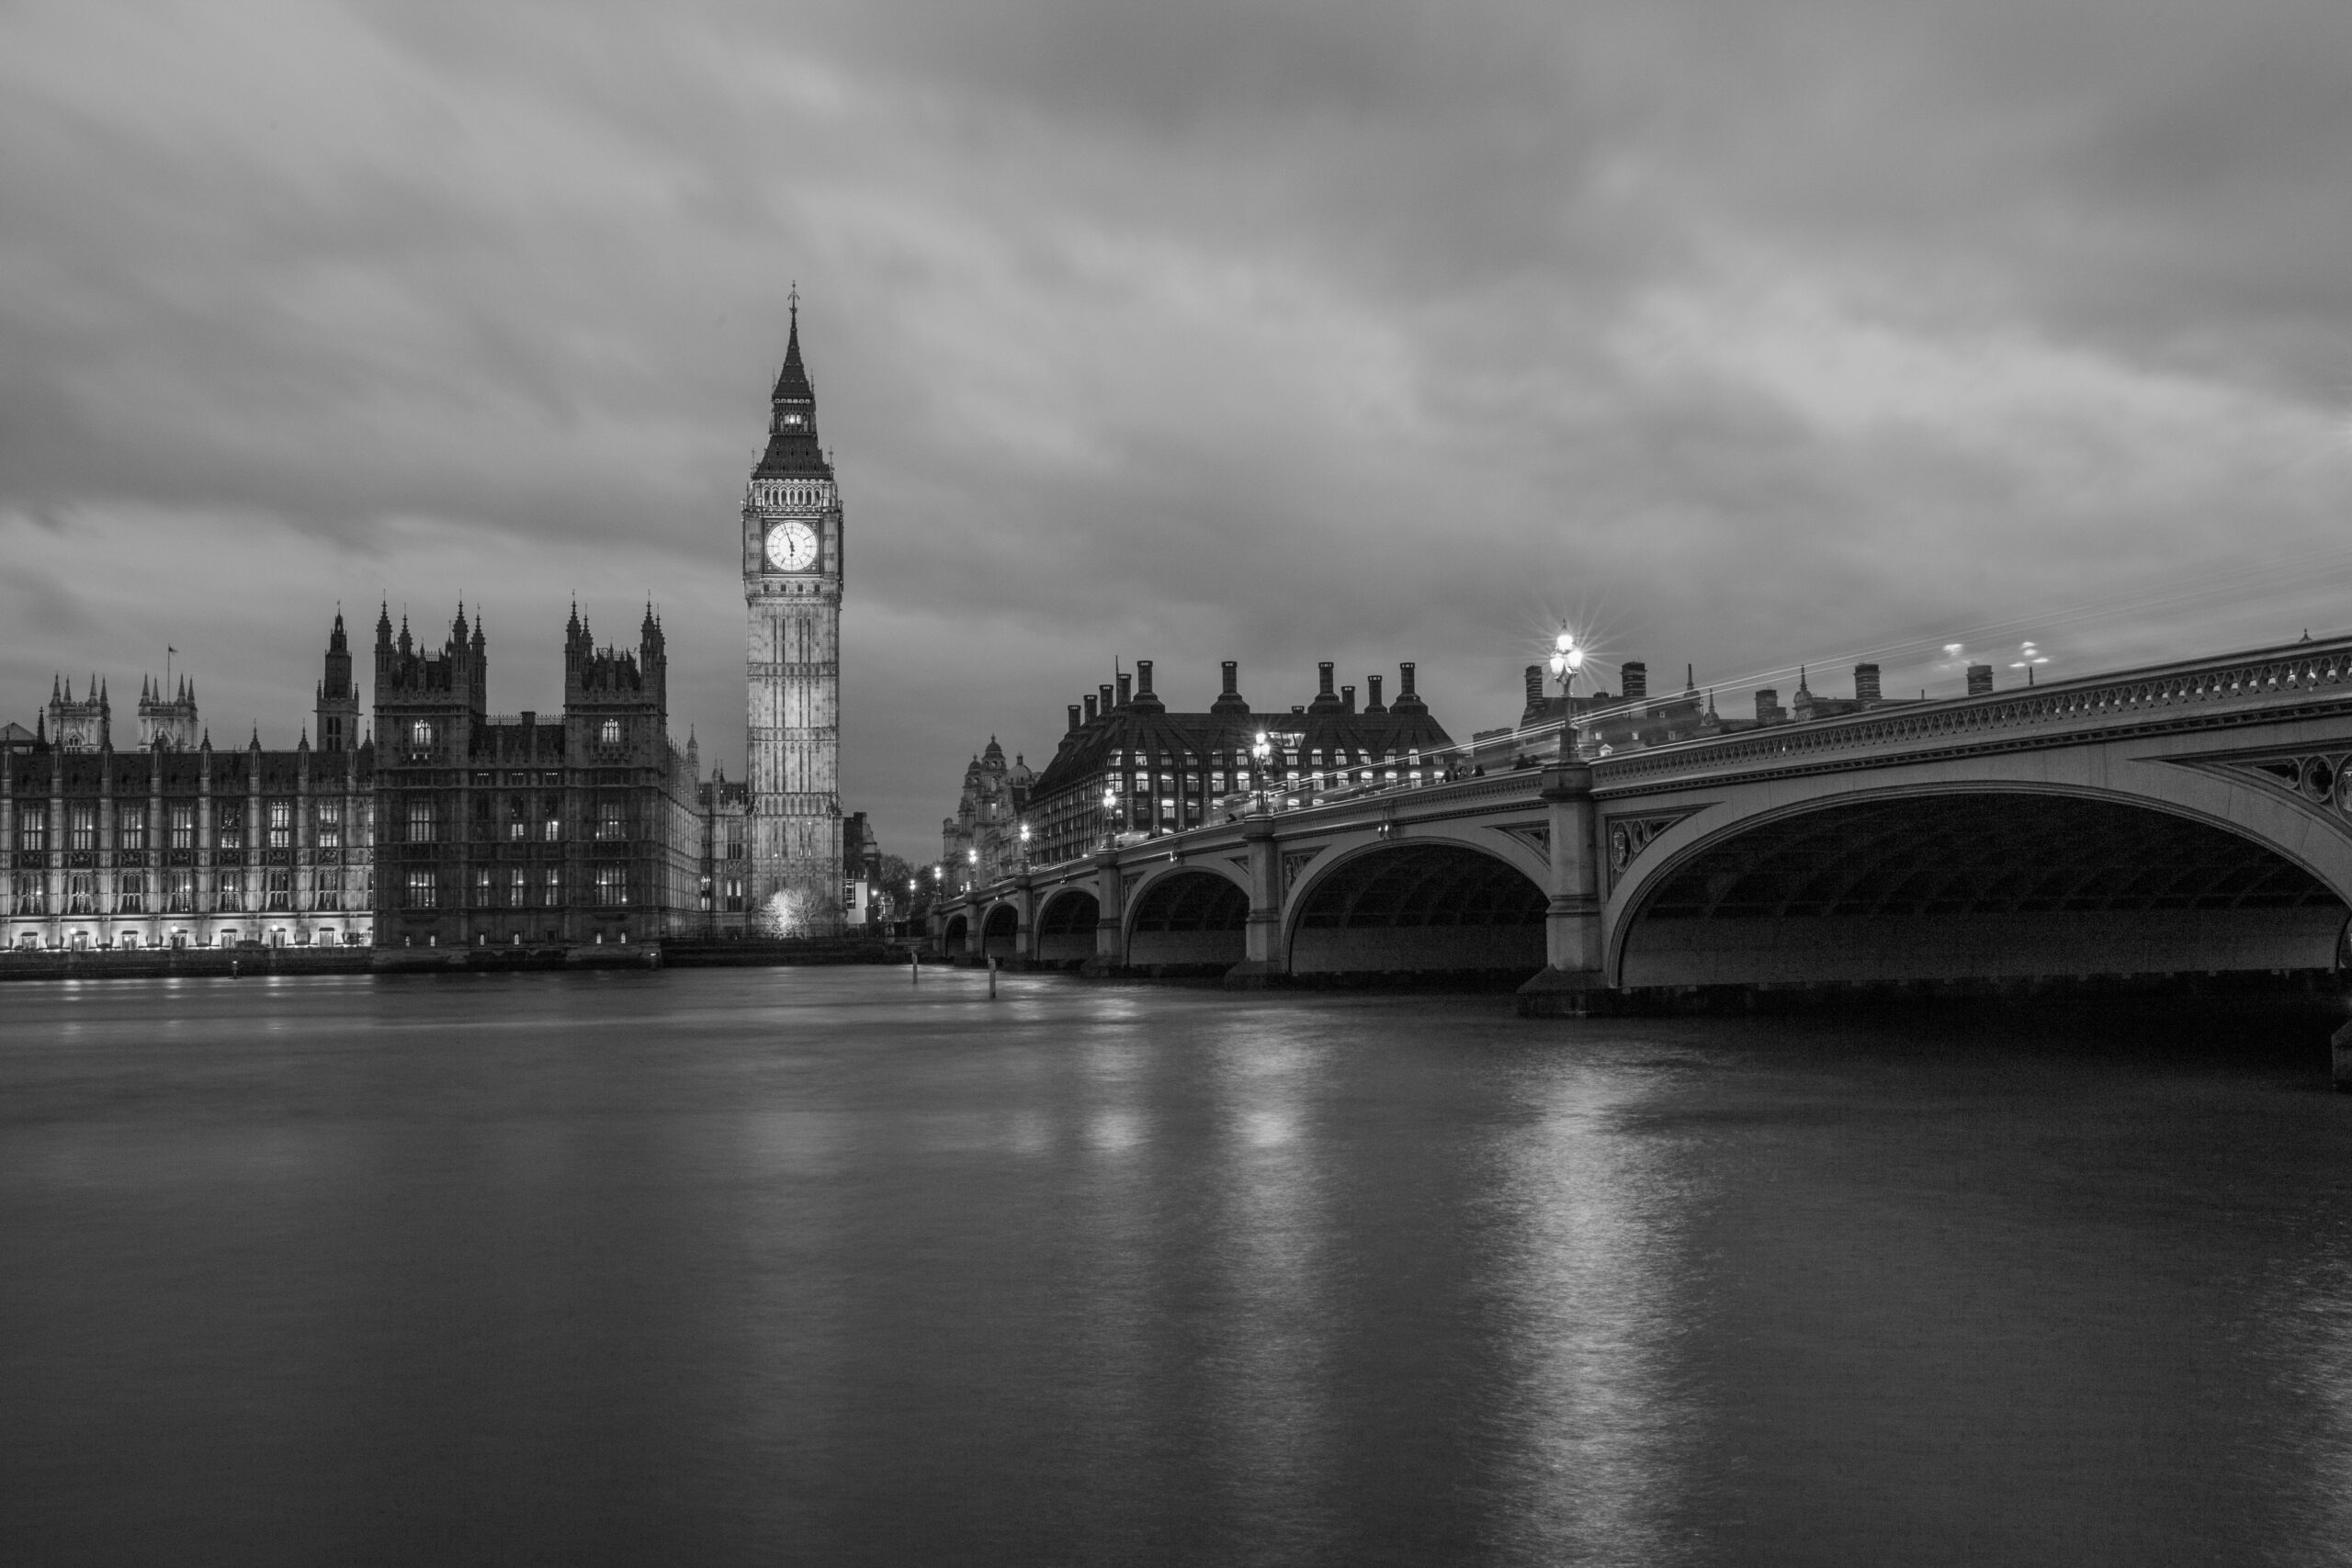 London Big Ben and River Thames at night